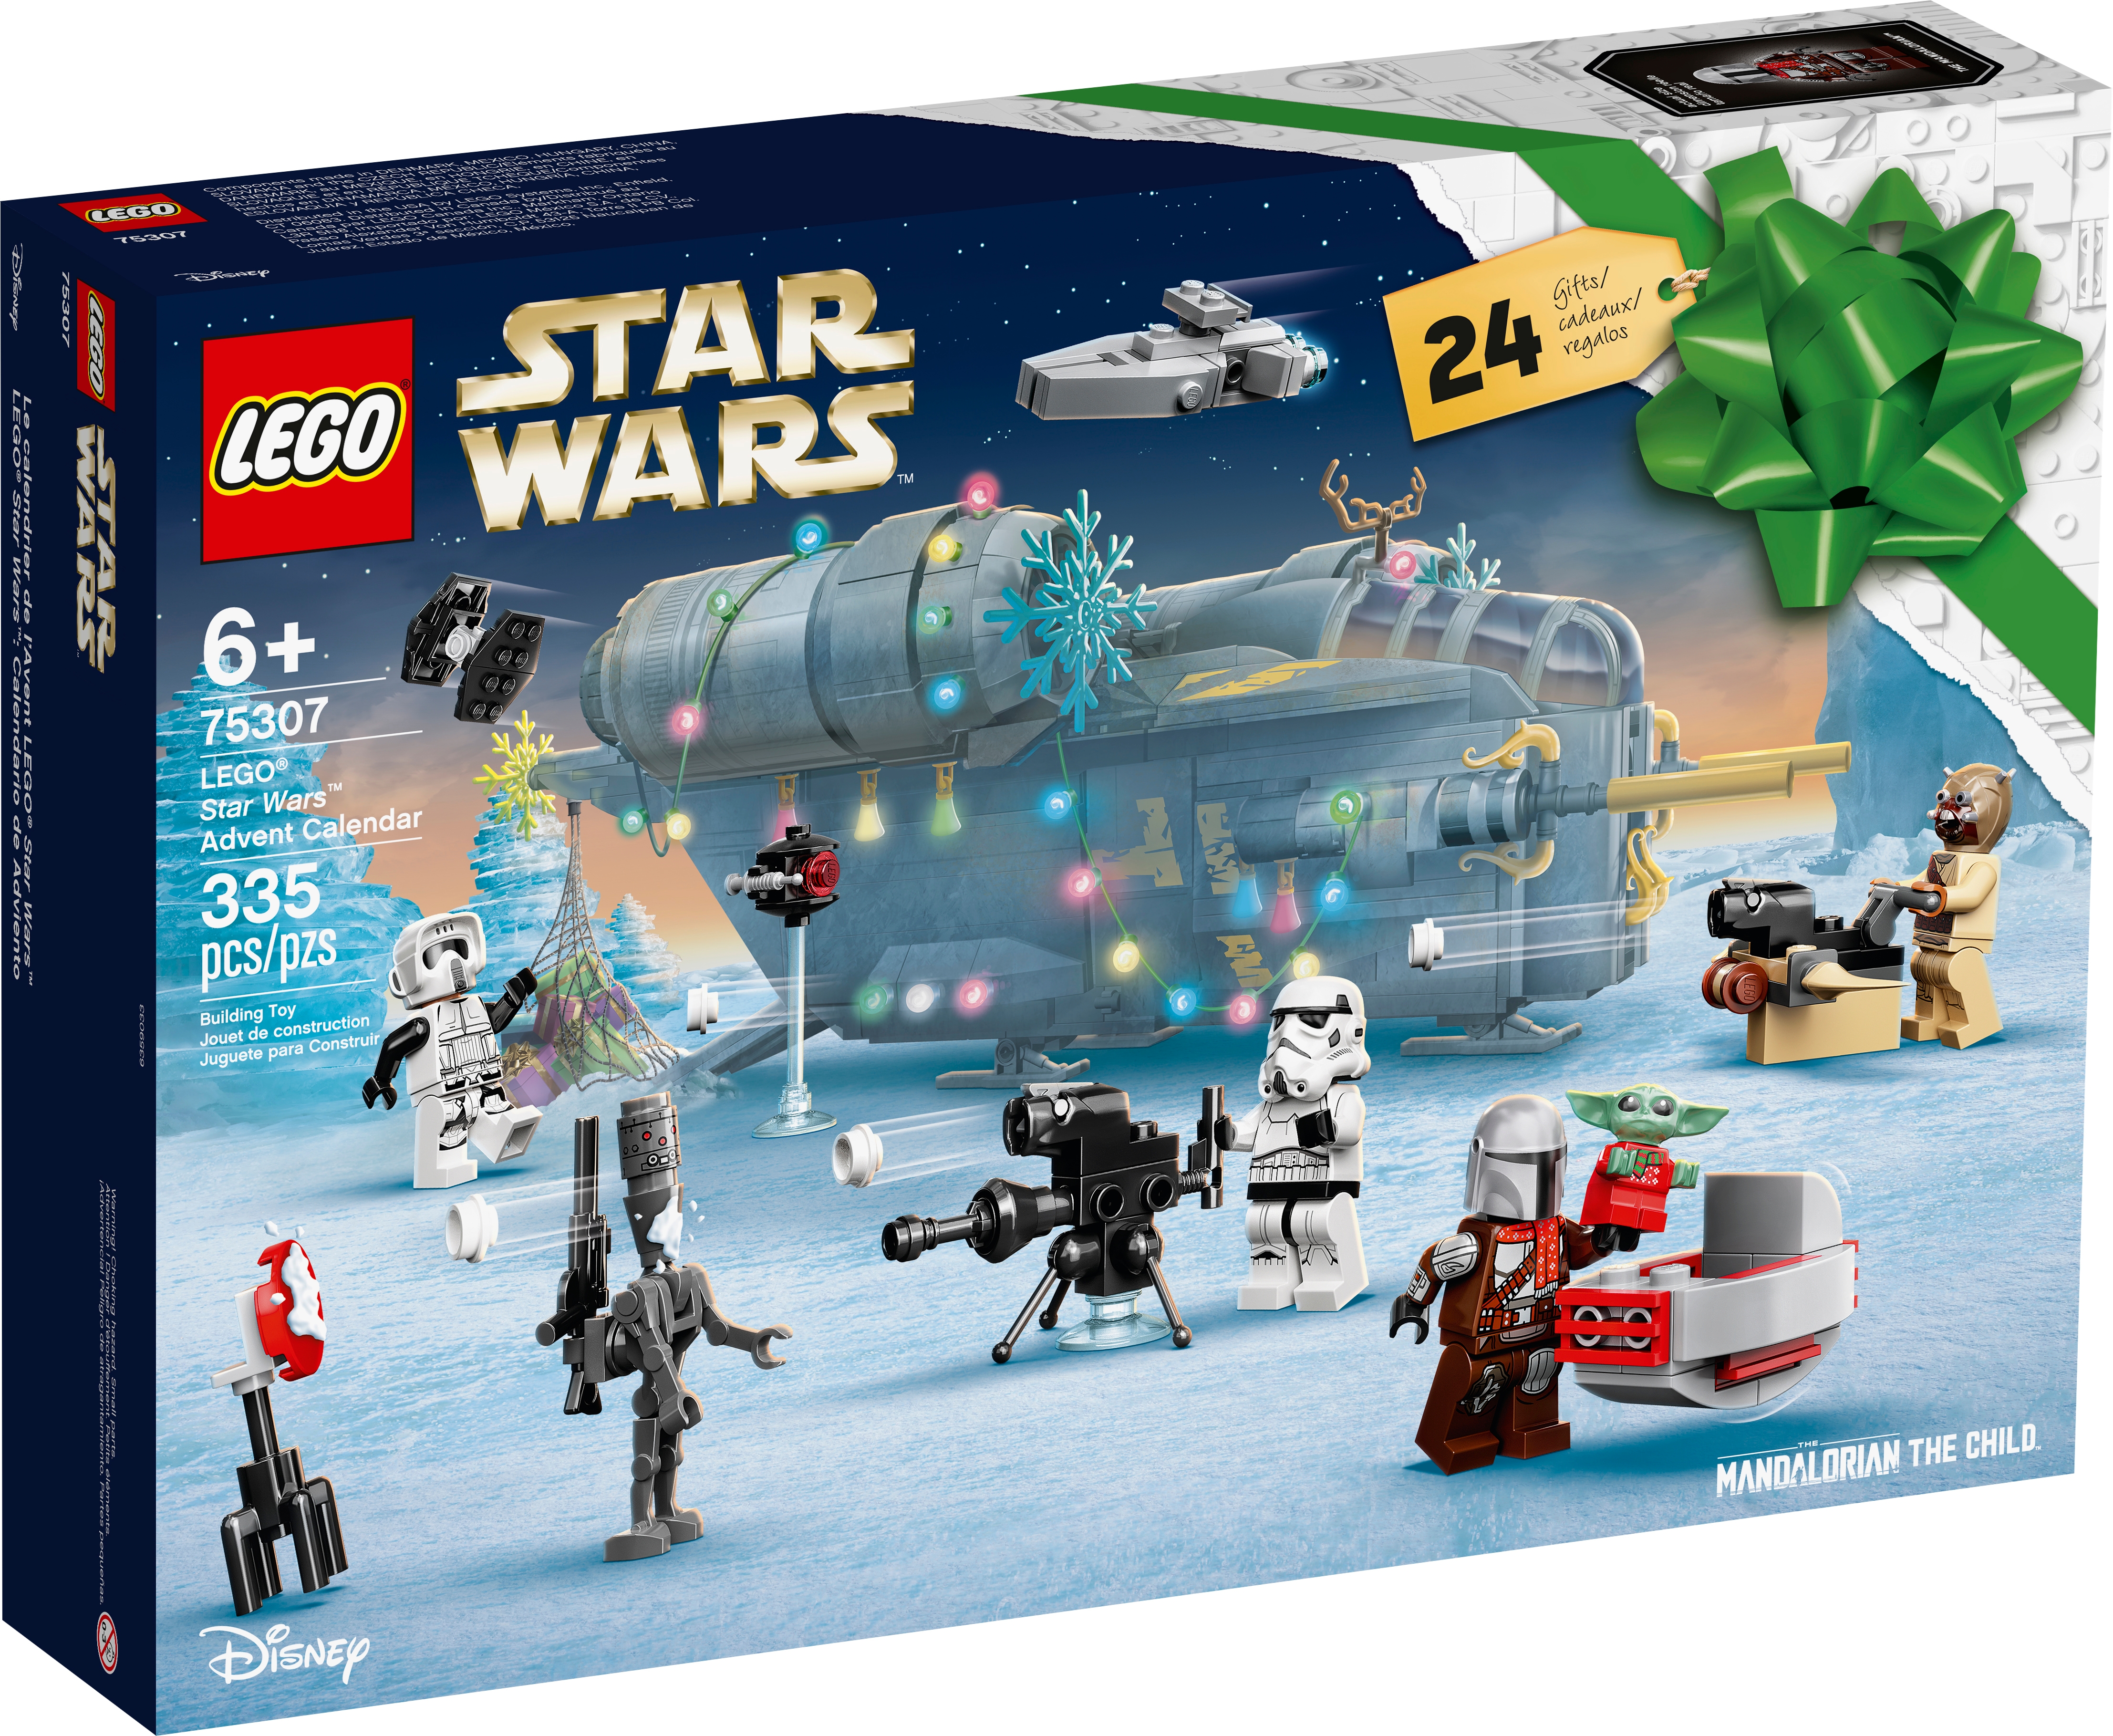 Pour lego star wars scout trooper Mandalorien LEGO COMPATIBLE UK Stock 